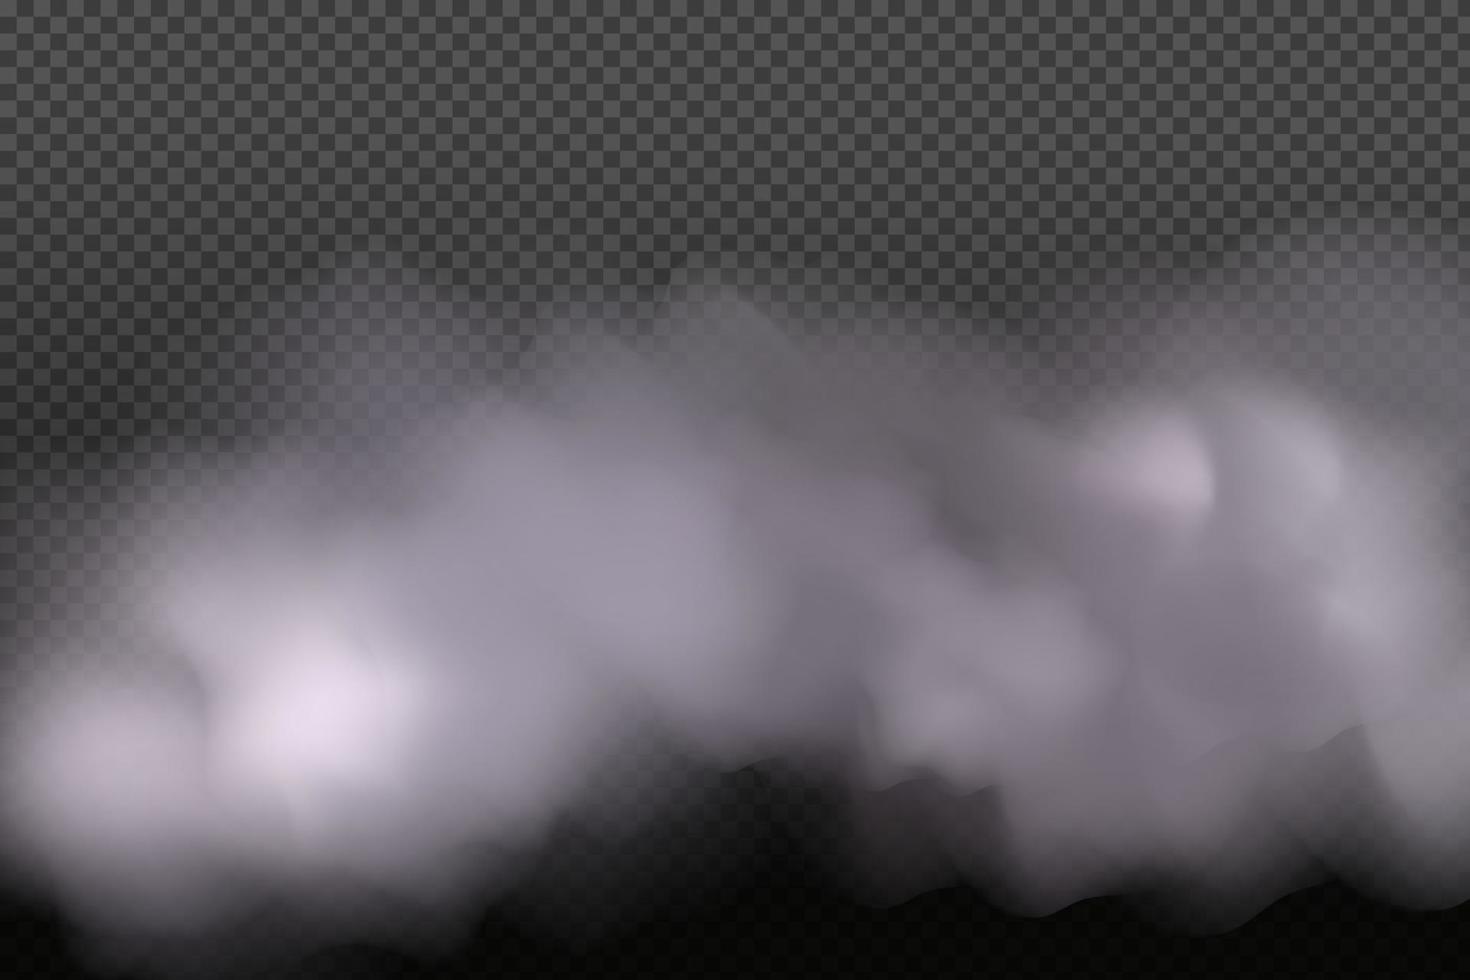 anneaux de fumée. nébulosité vectorielle blanche, brouillard ou fumée sur fond à carreaux sombres. ciel nuageux ou smog sur la ville. illustration vectorielle. vecteur